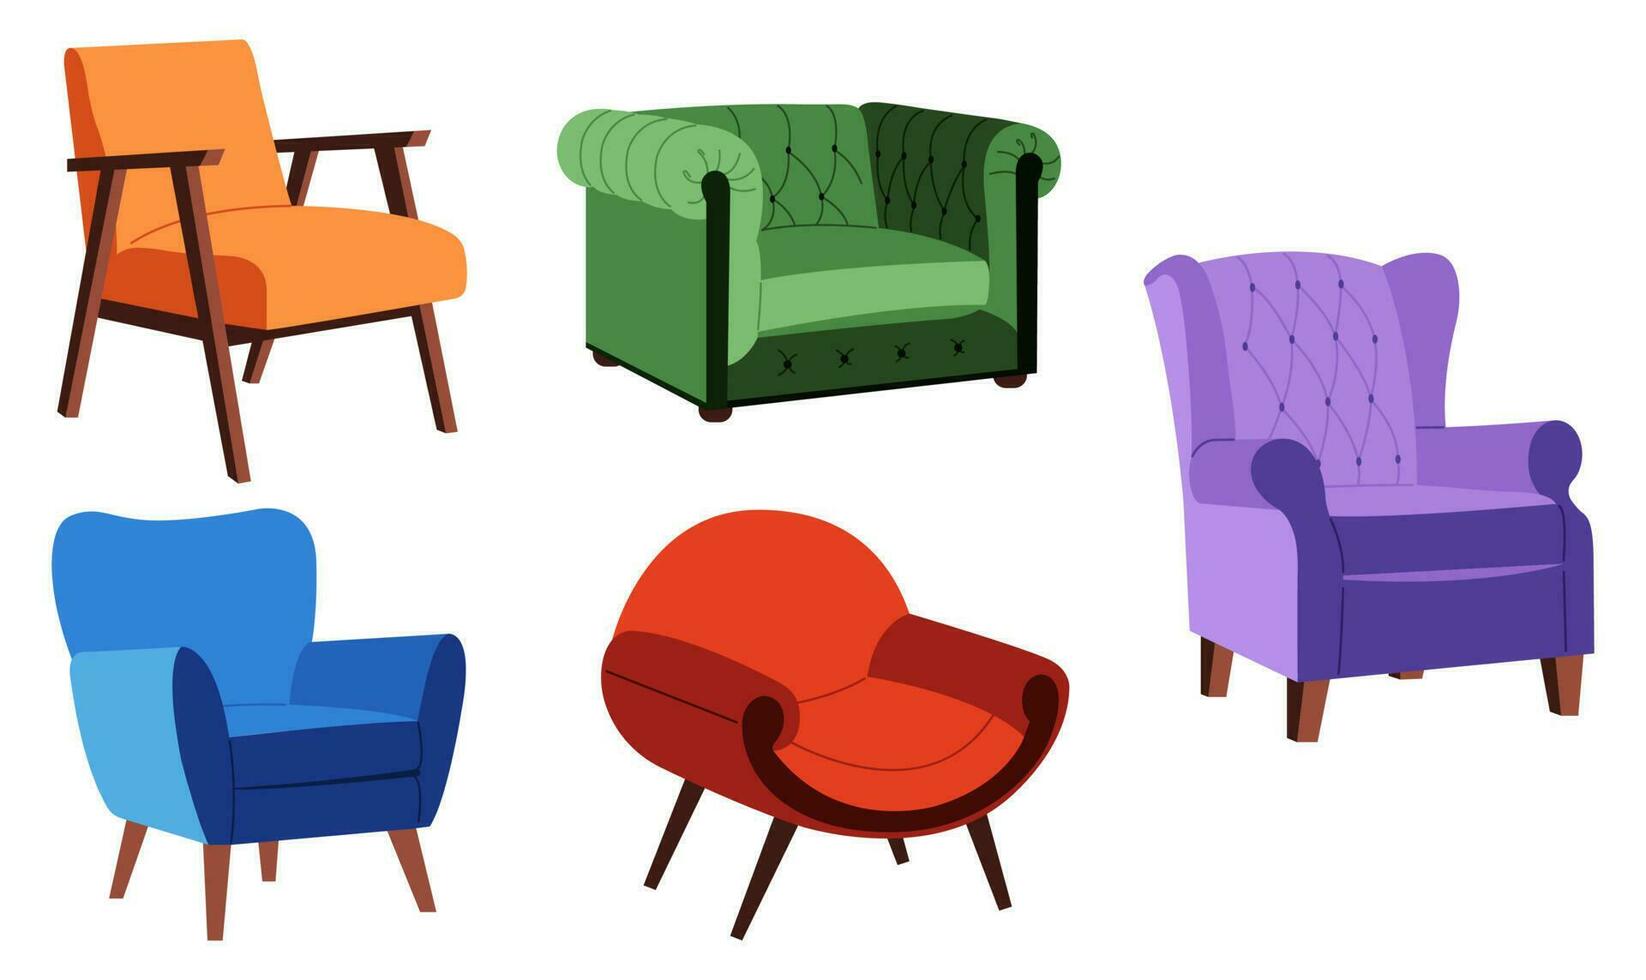 reeks van verschillend comfortabel fauteuils met bekleding. modern meubilair voor knus huis interieur ontwerp. vlak vector illustratie.